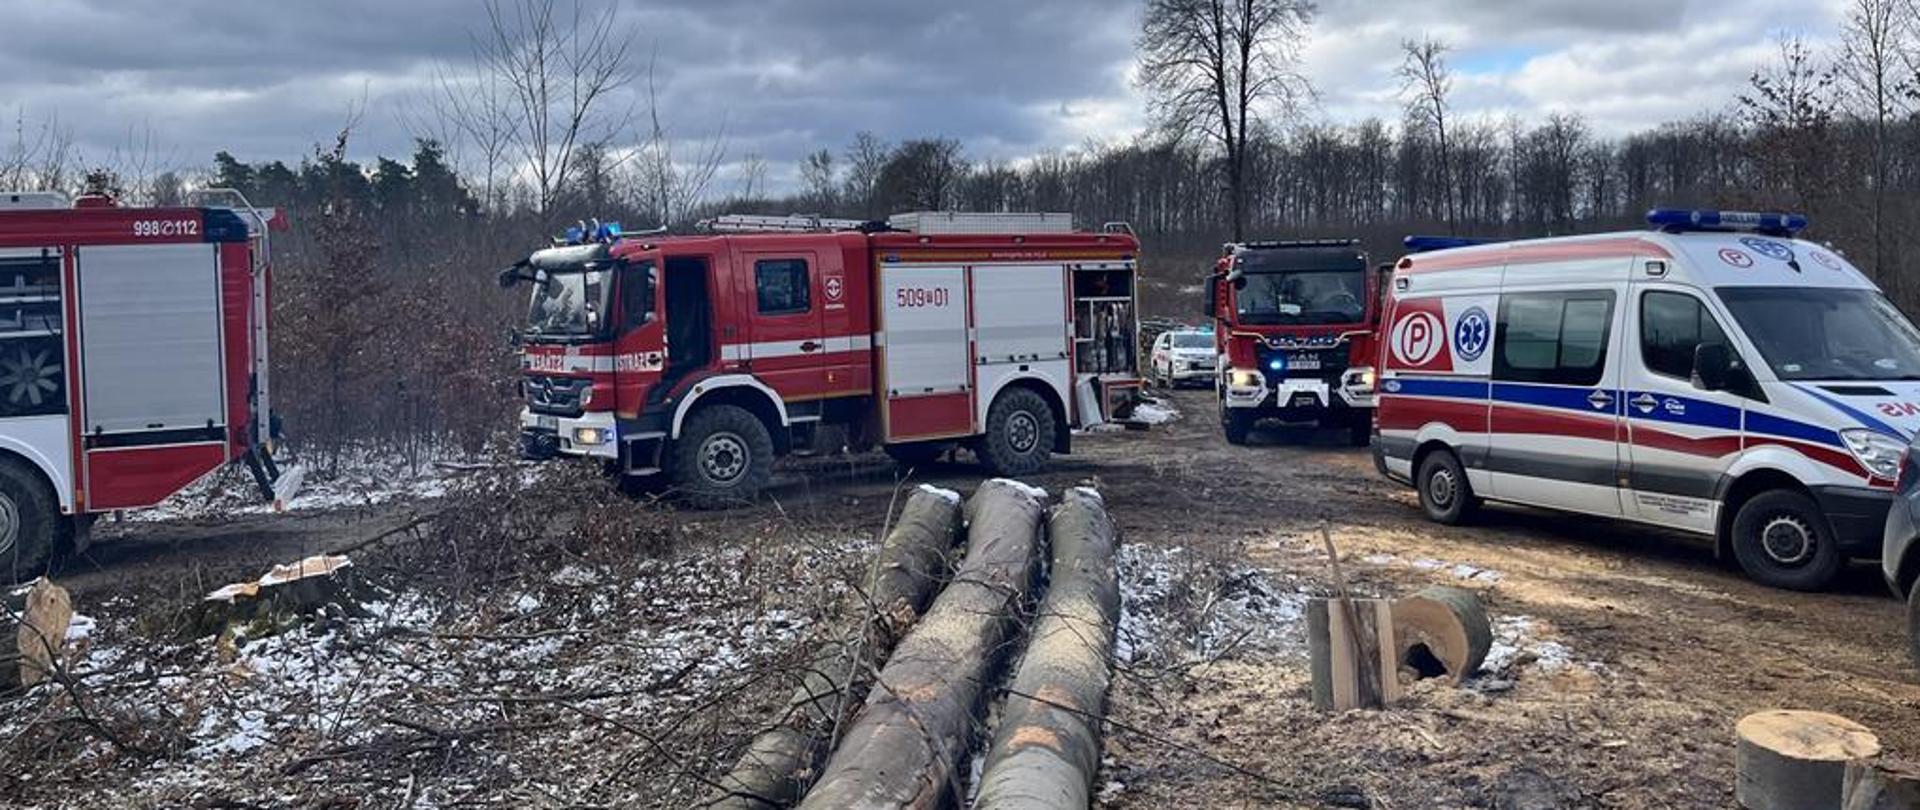 Działania ratownicze w miejscowości Jurkowice